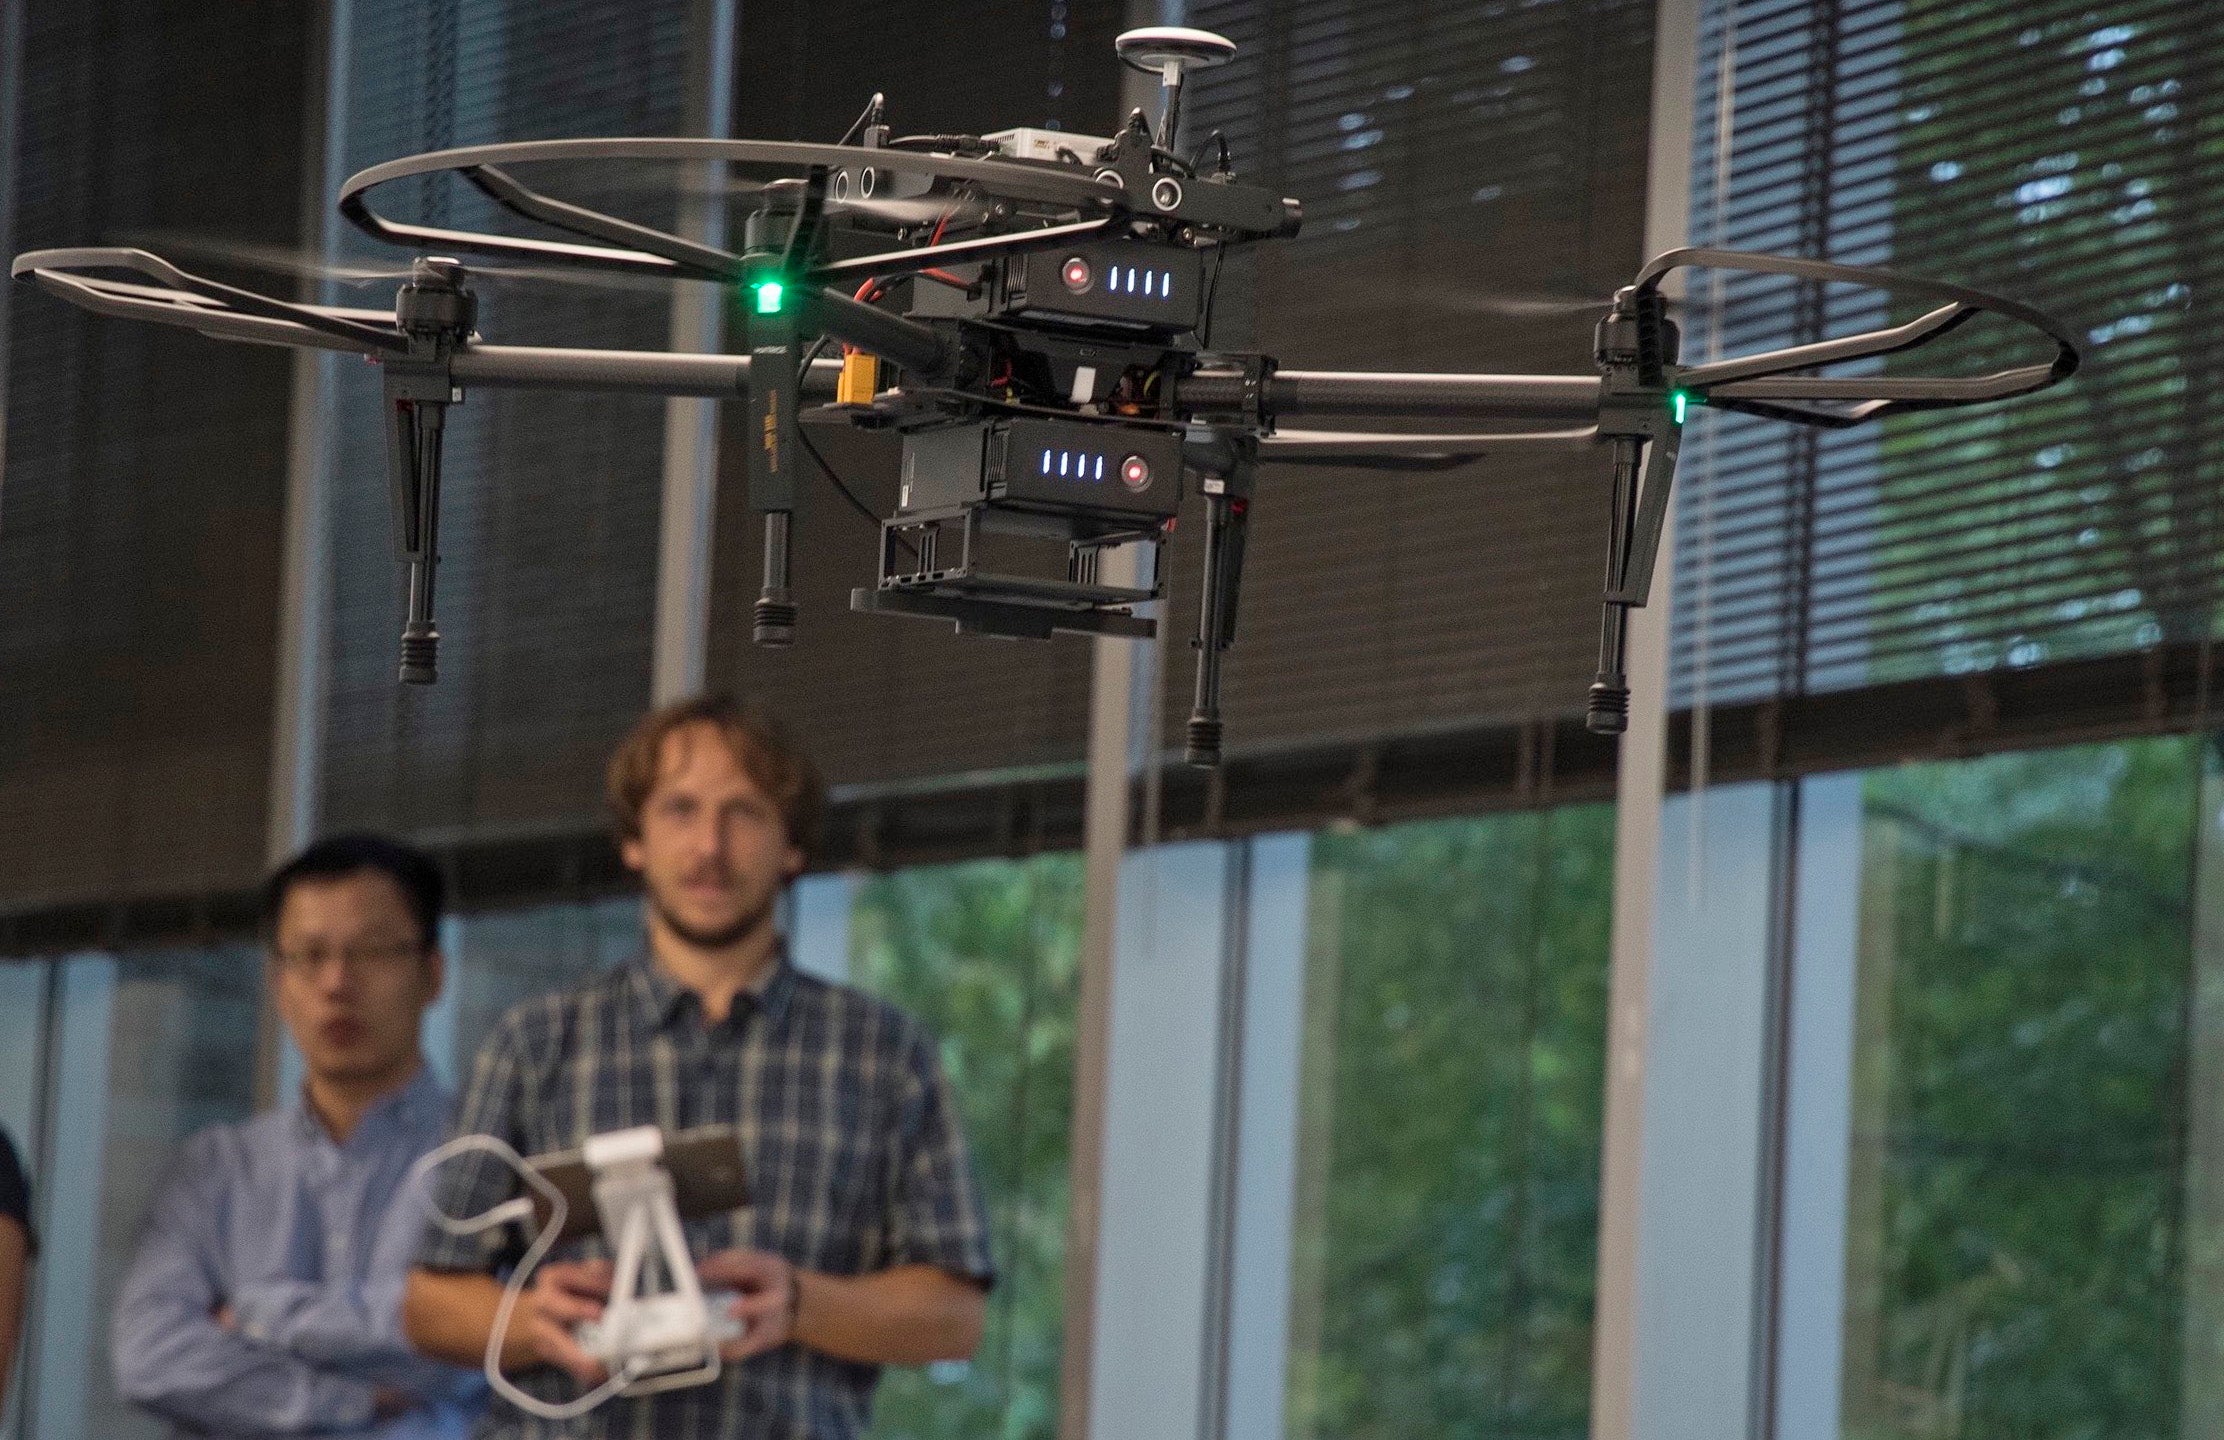 Paolo Stegagno operates a drone